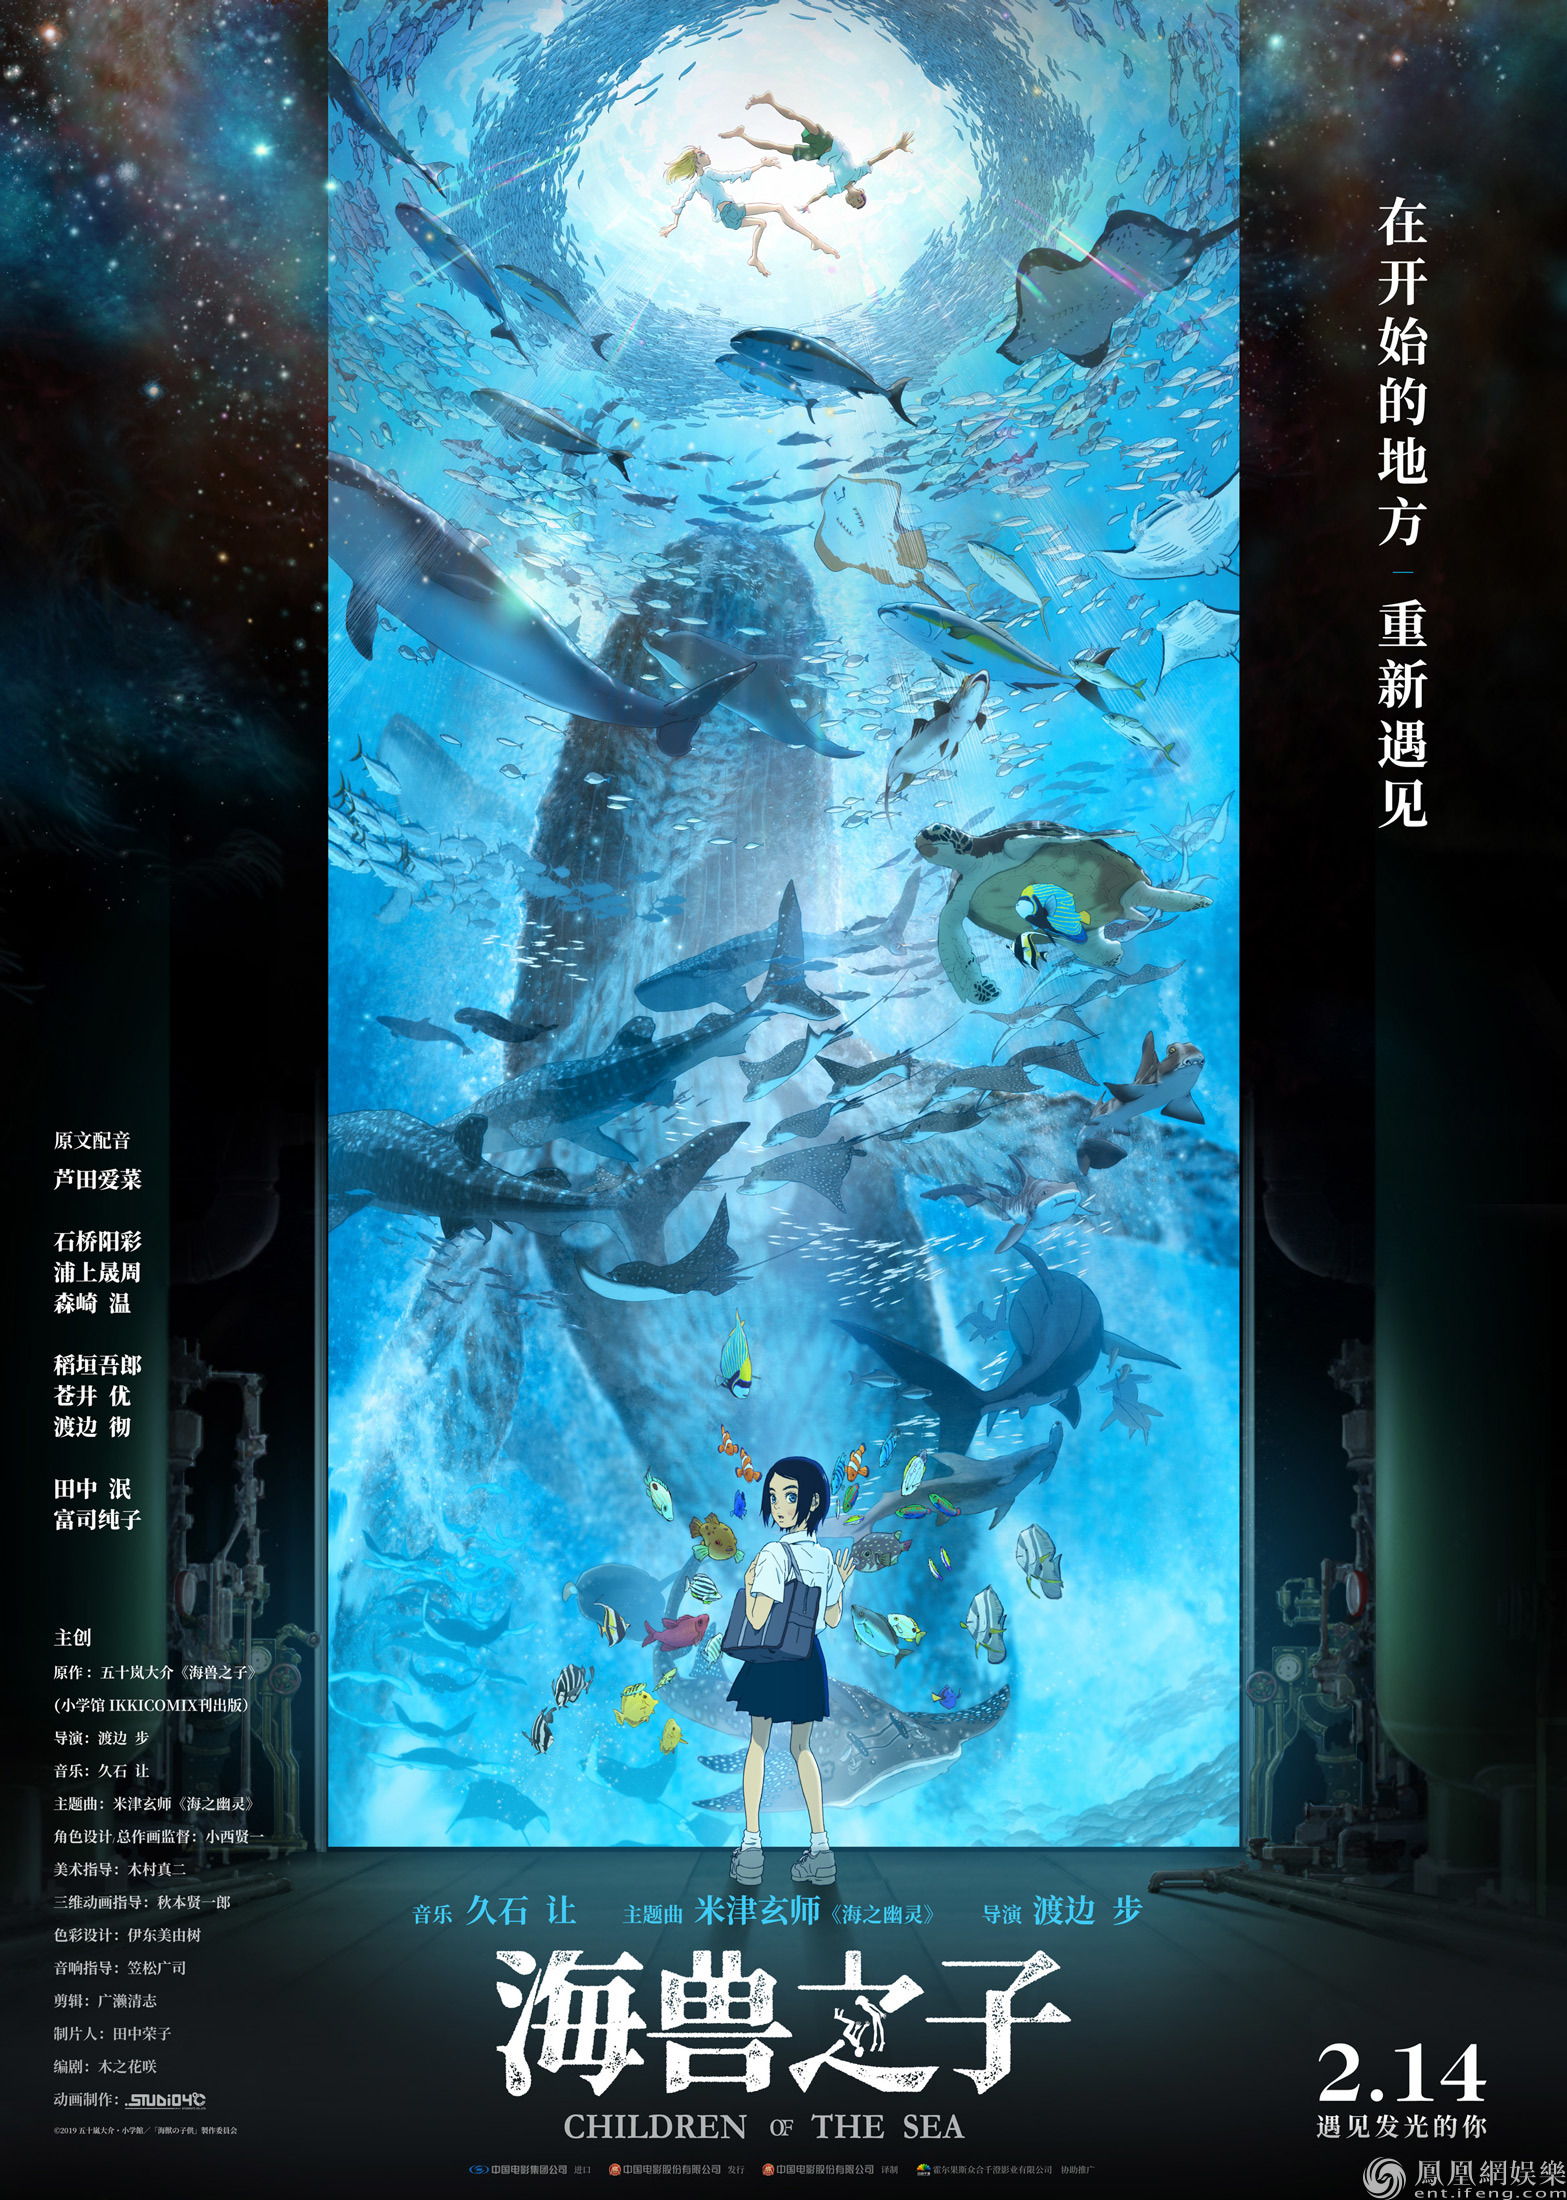 《海兽之子》中国版预告来袭 王者配置共谱海底之境